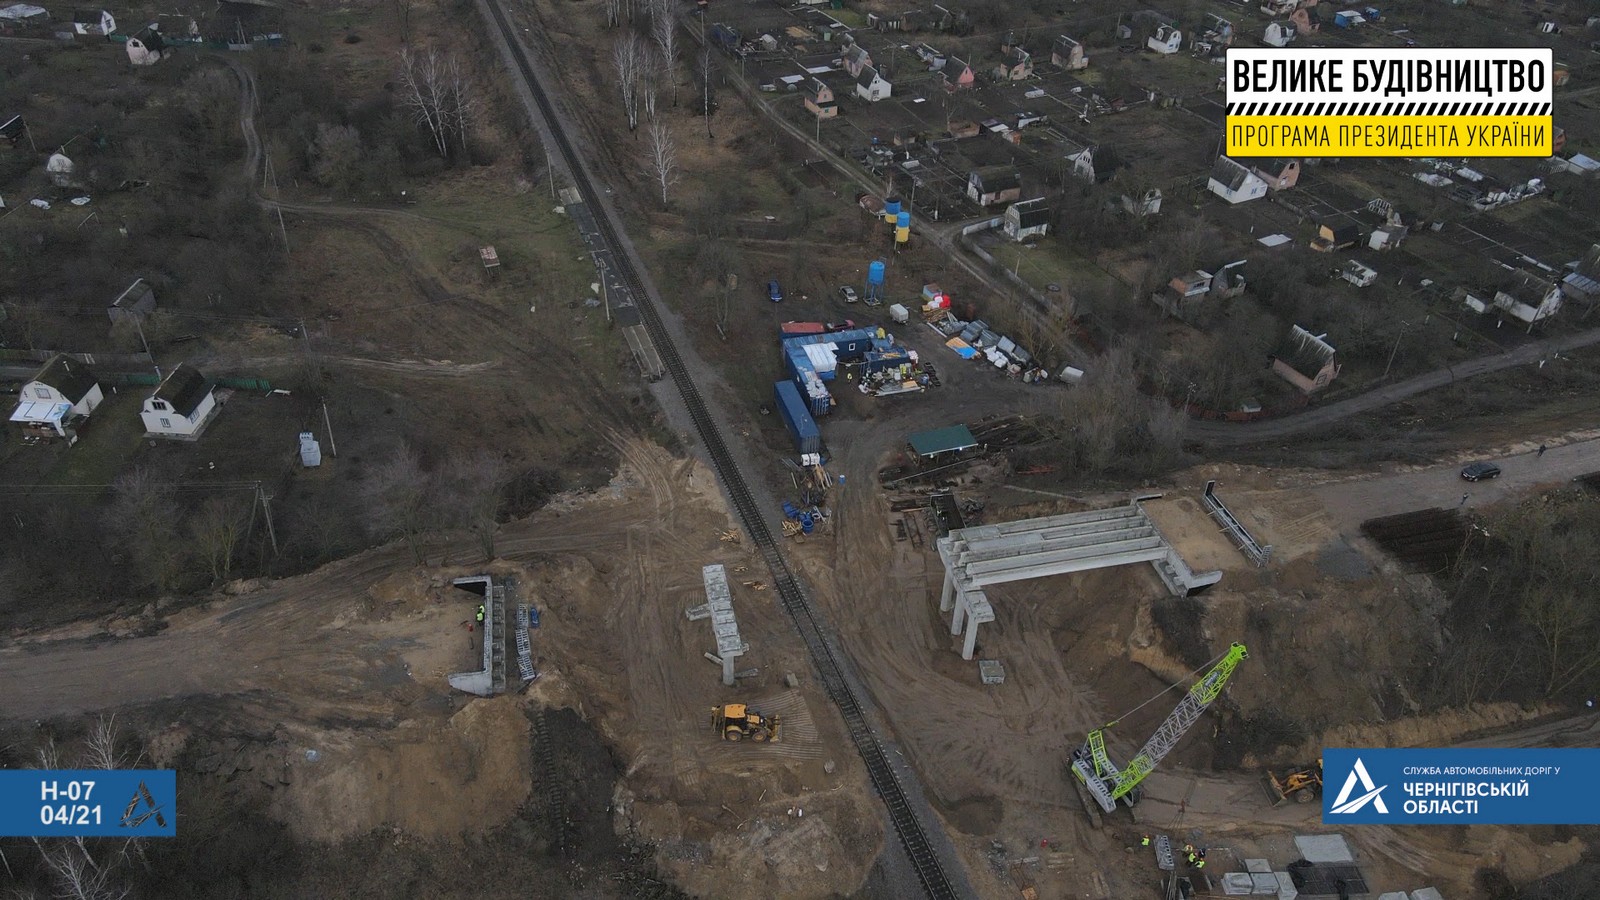 Хронологія реконструкції шляхопроводу через залізницю біля Прилук (Фото)